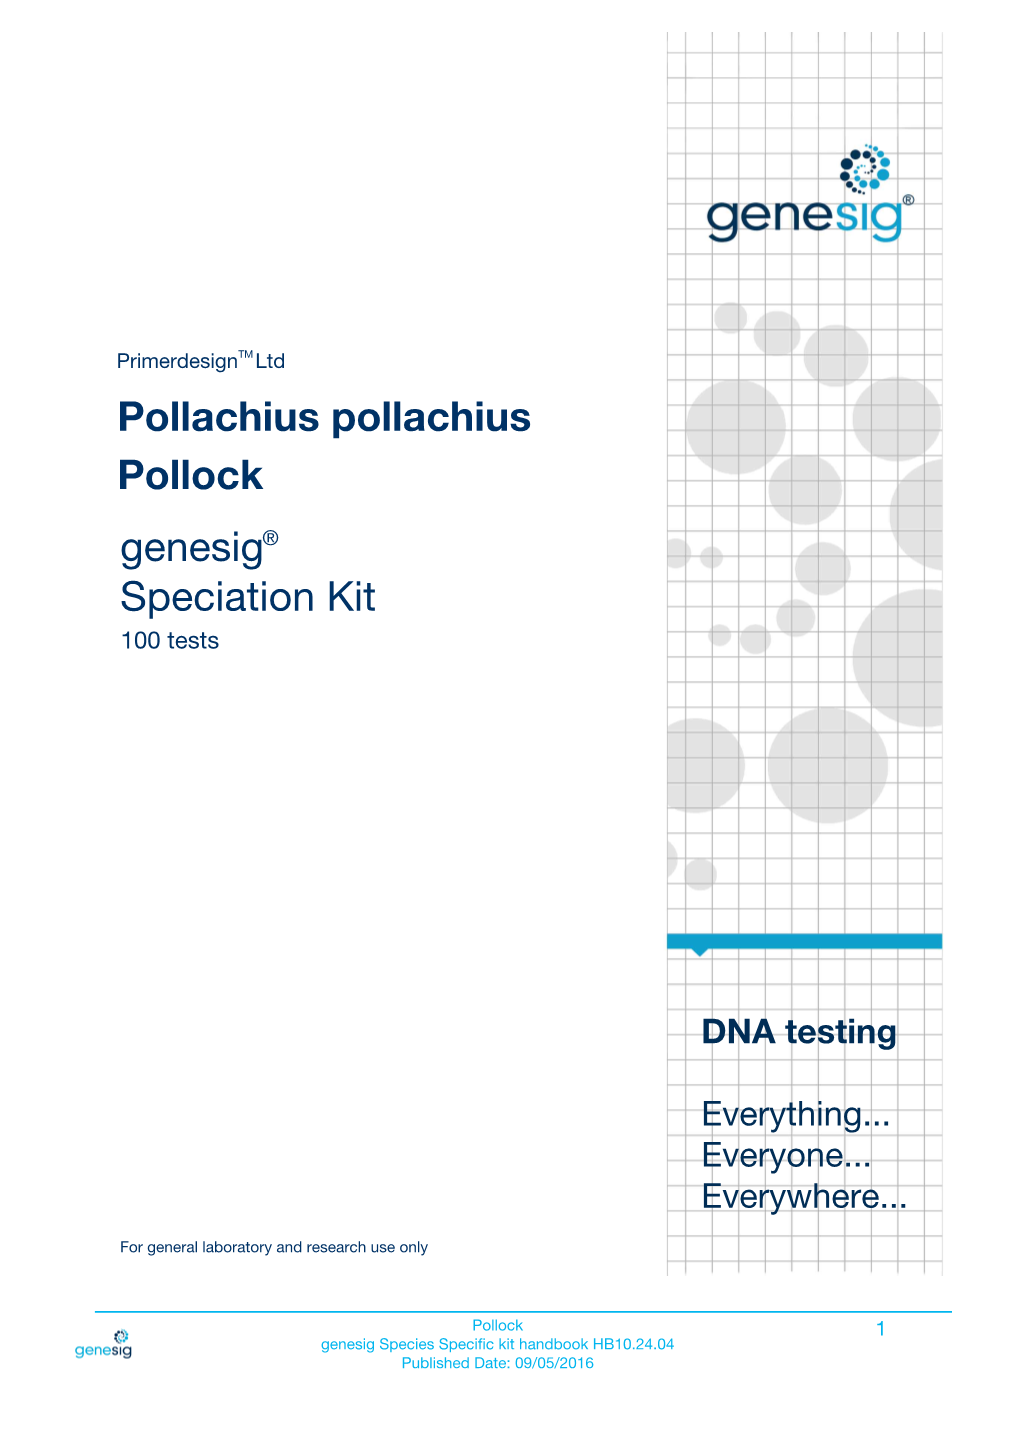 Pollachius Pollachius Genesig Speciation Kit Pollock